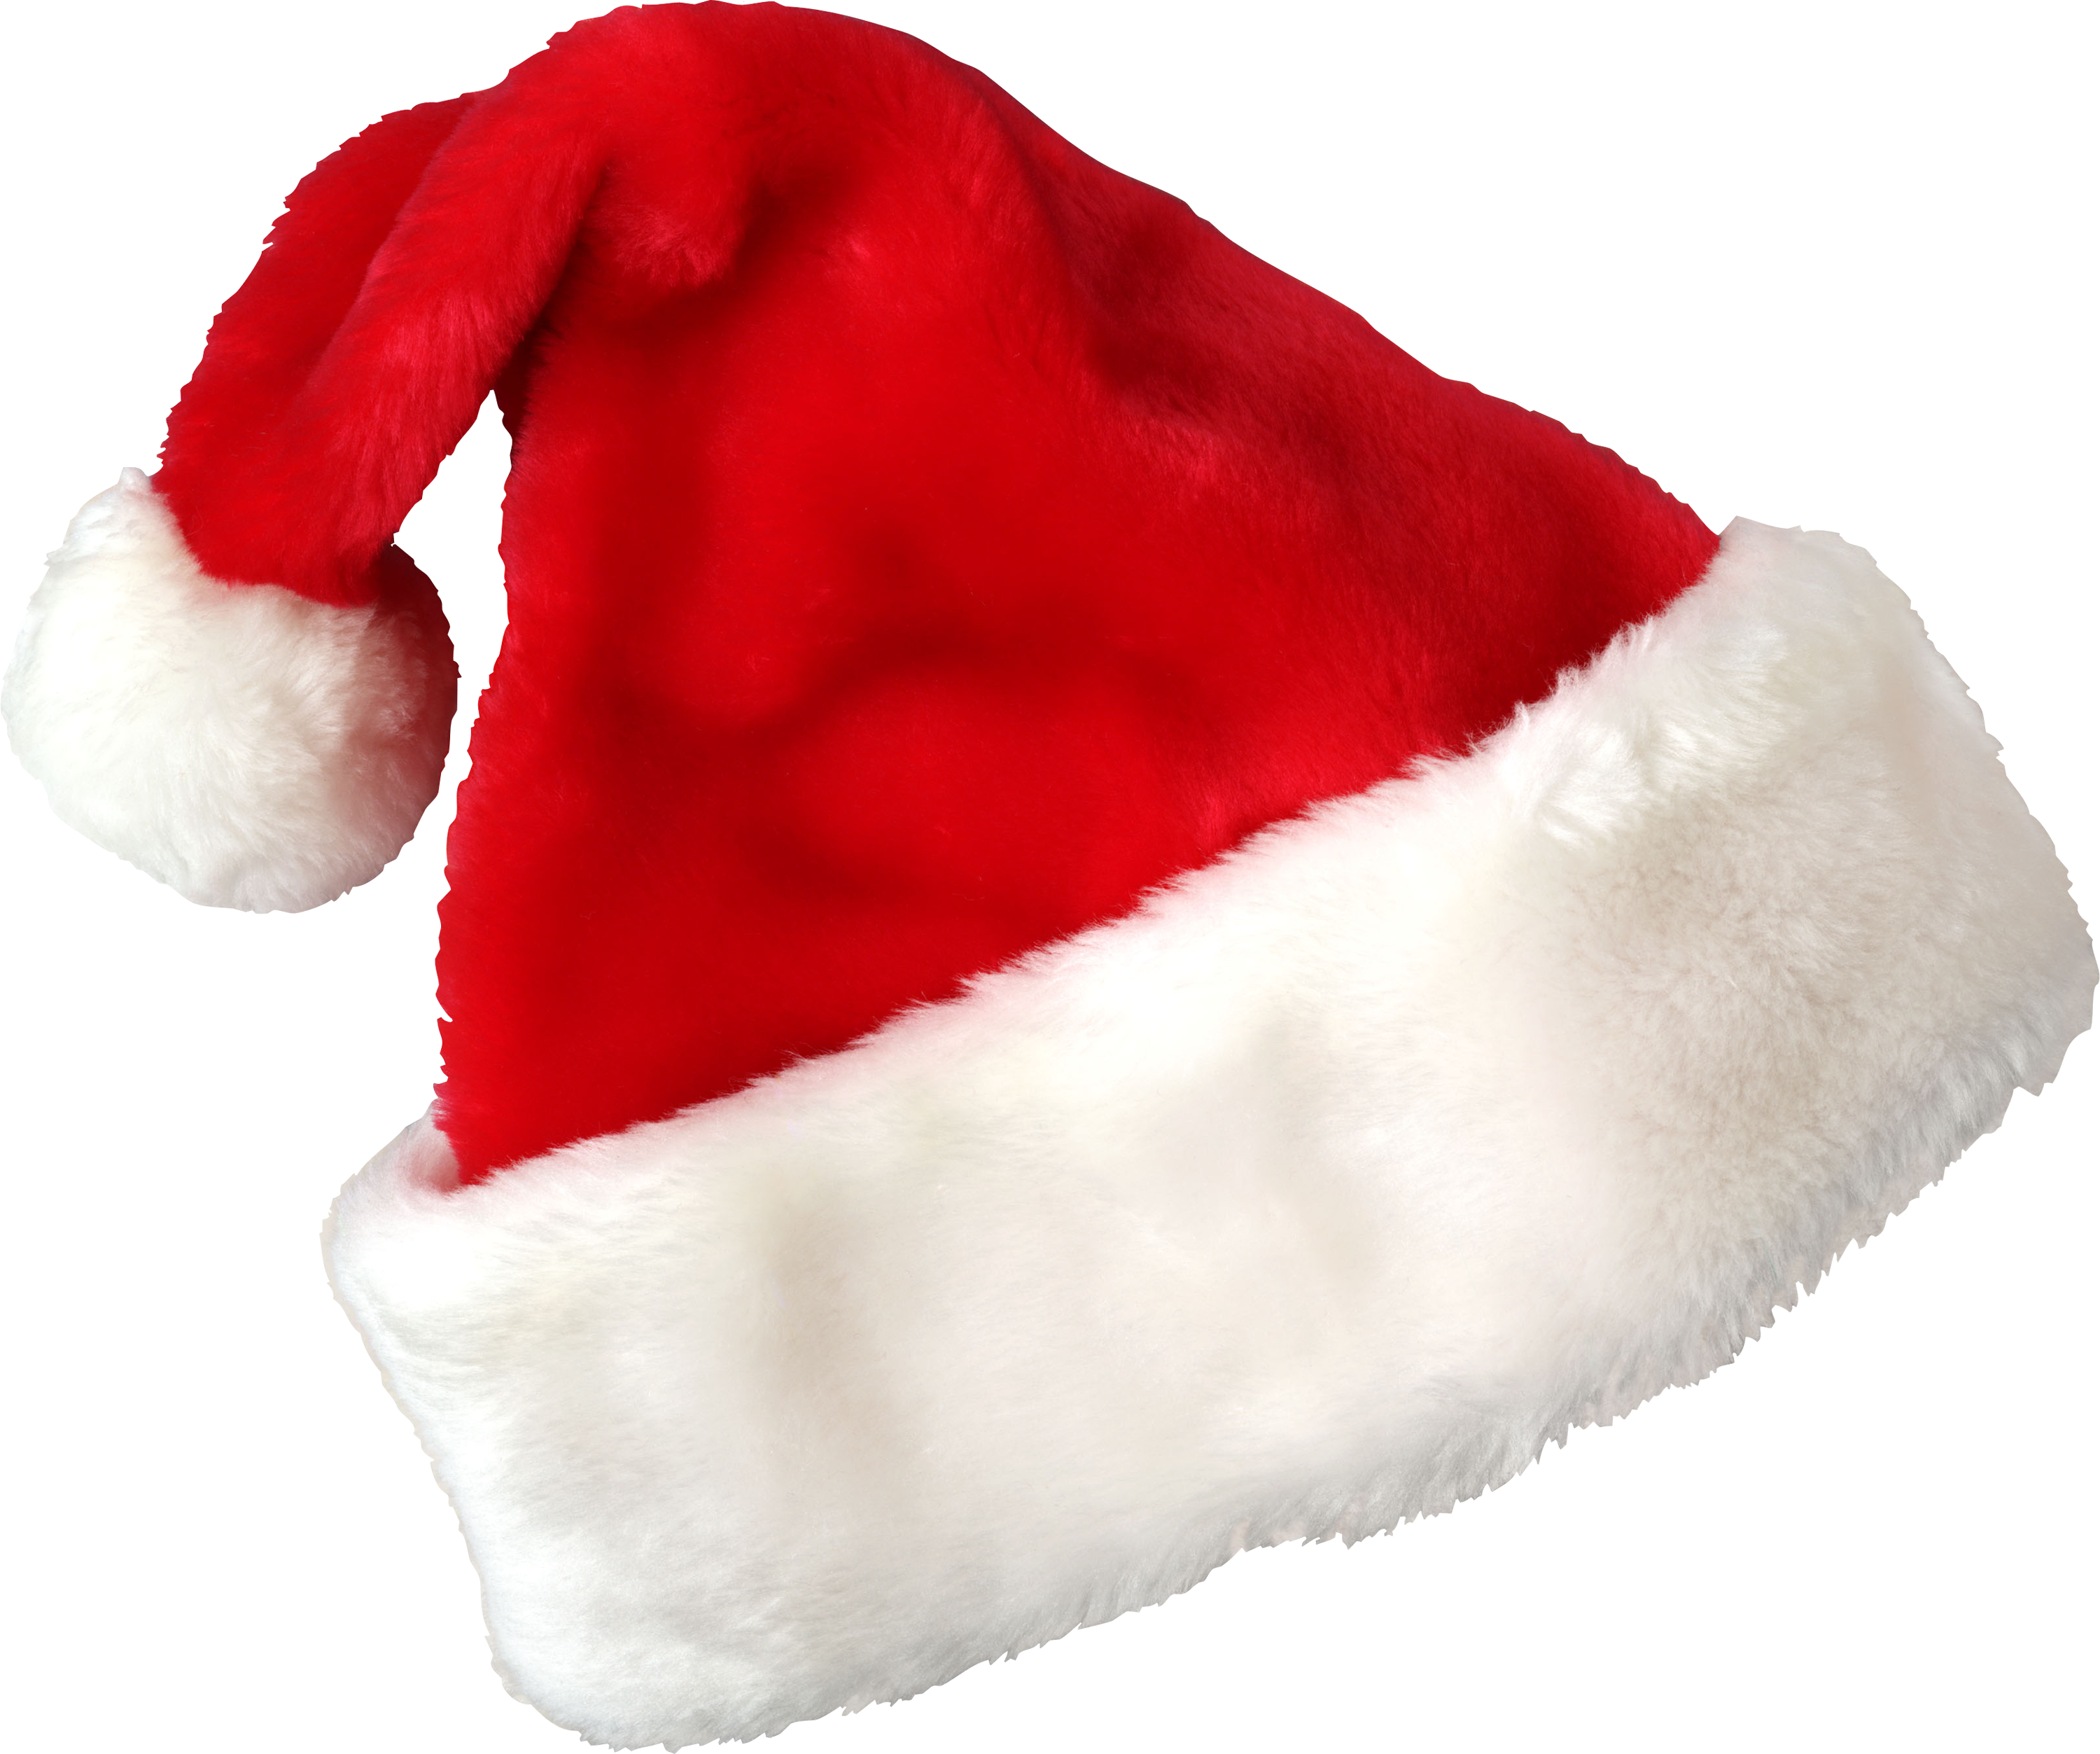 คริสต์มาสซานต้าในหมวกแดง